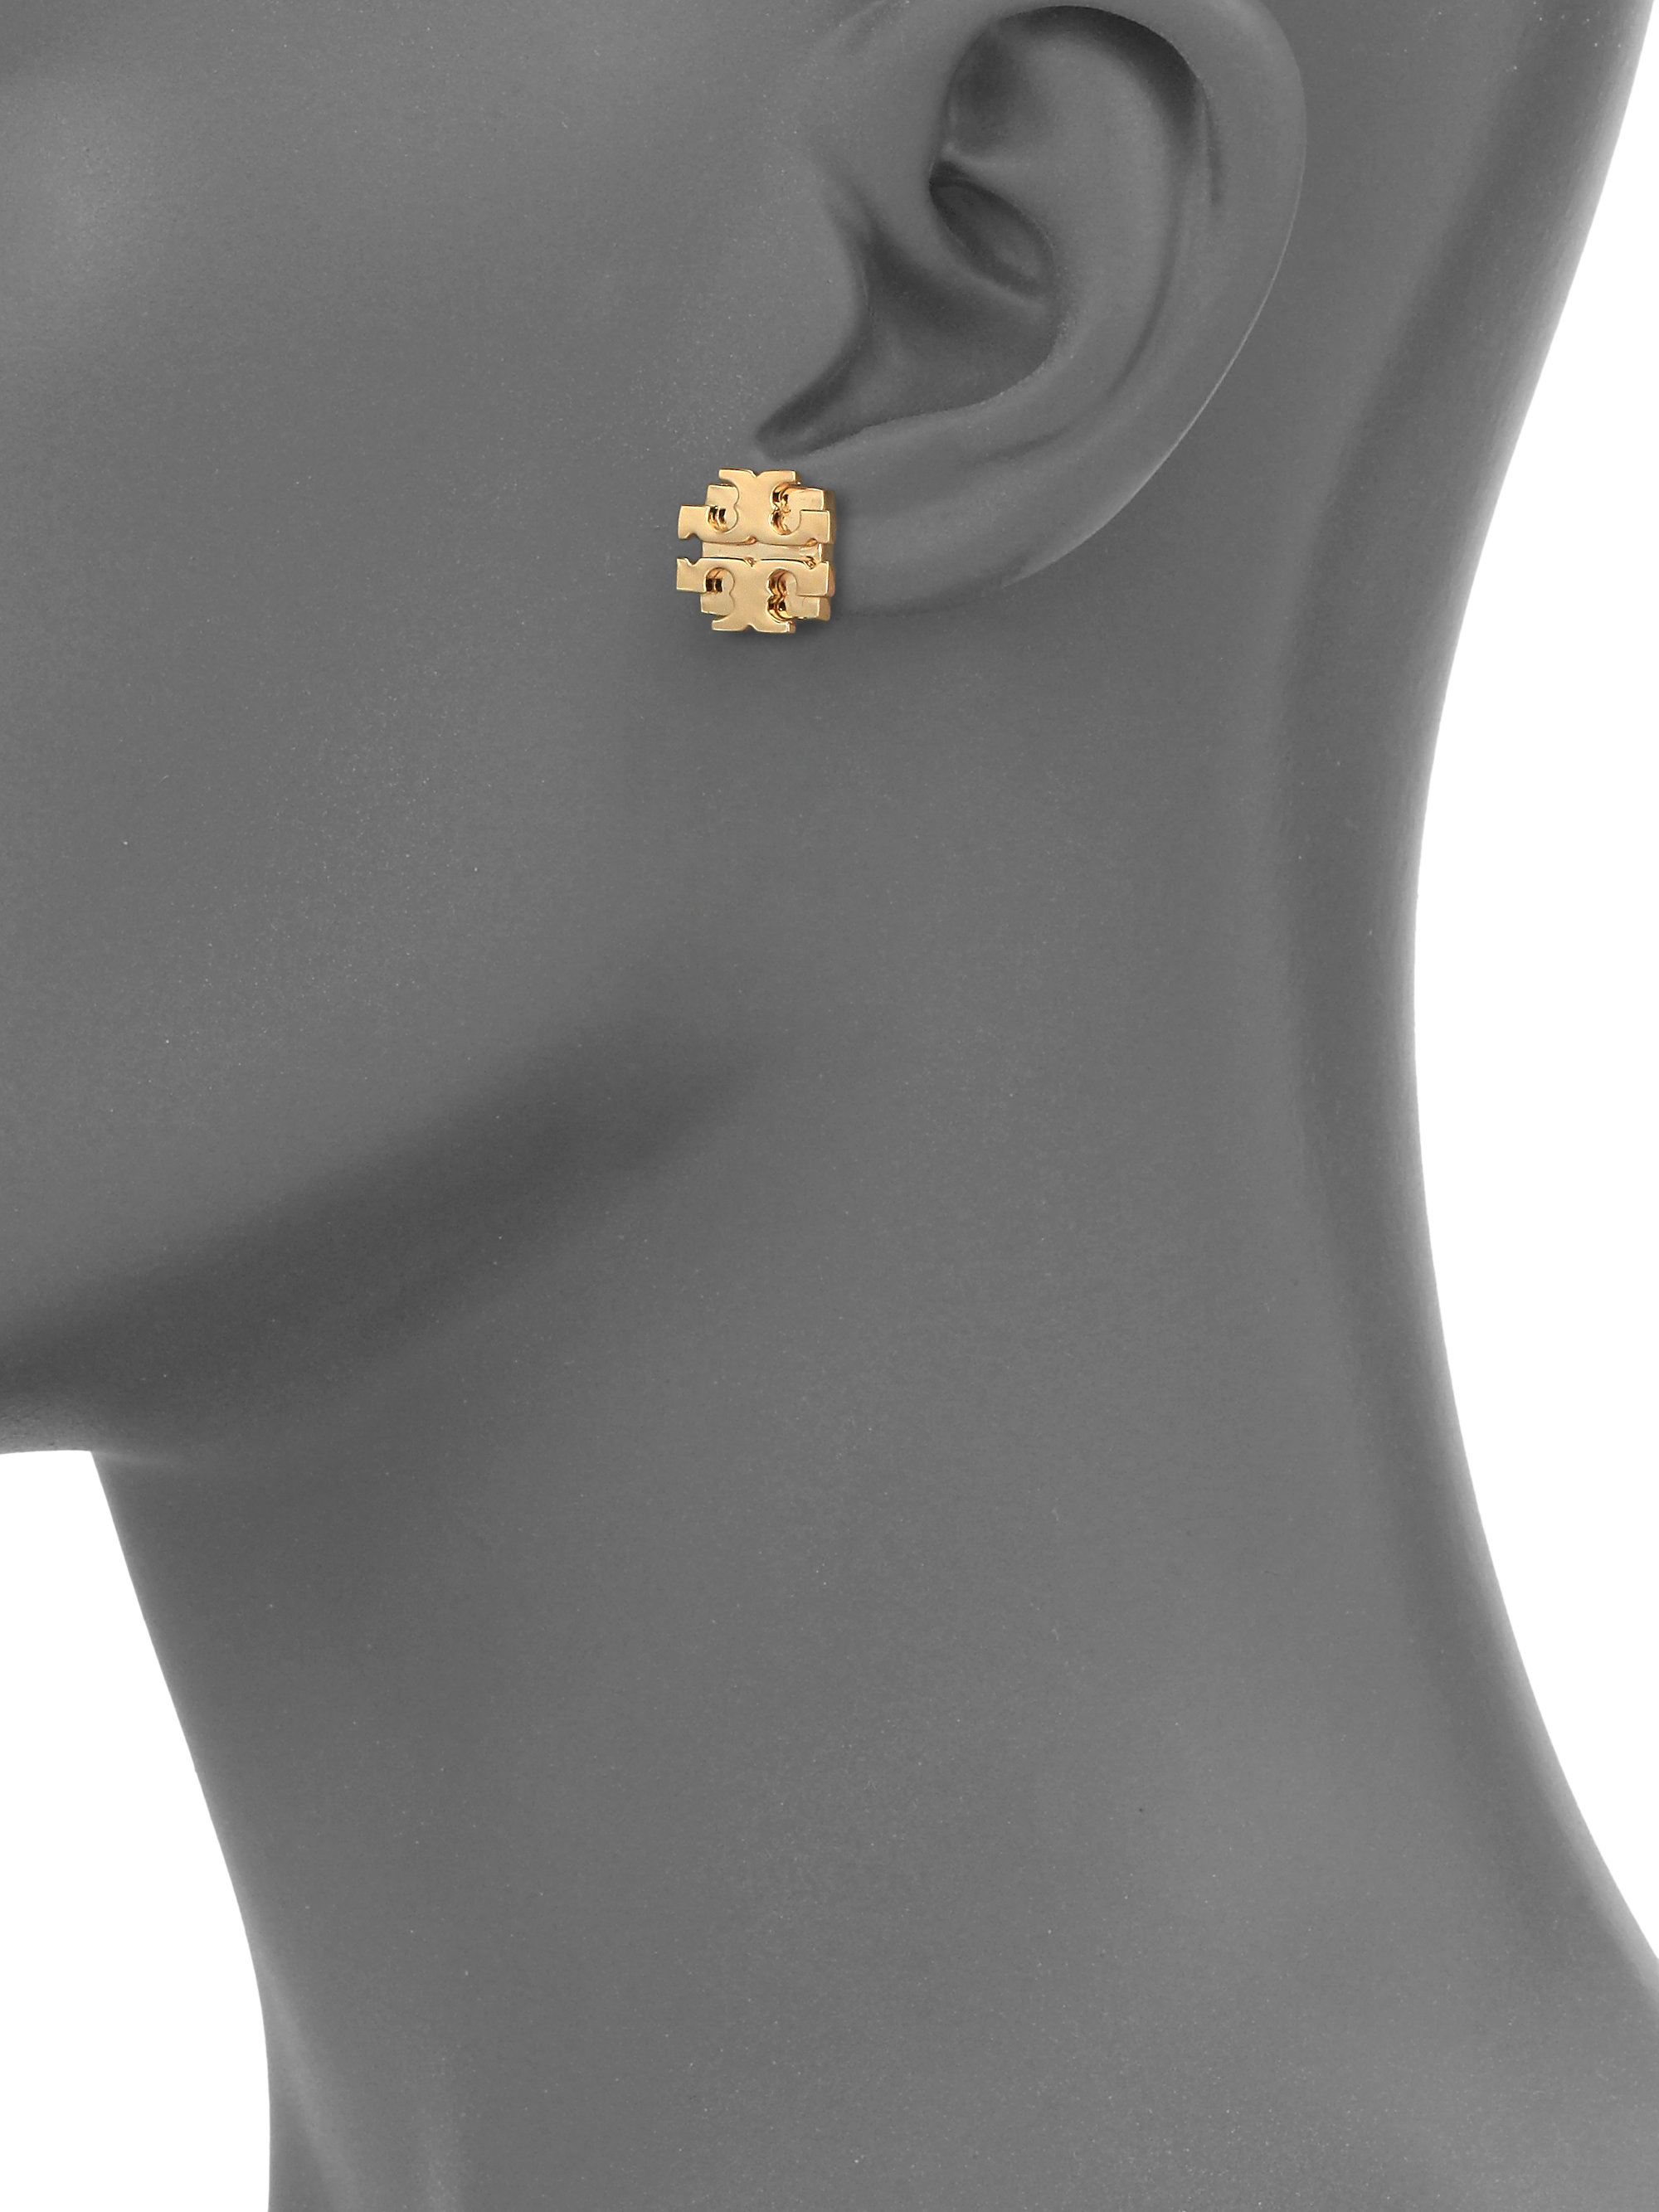 Tory Burch T Logo Large Stud Earrings/goldtone in Metallic - Lyst